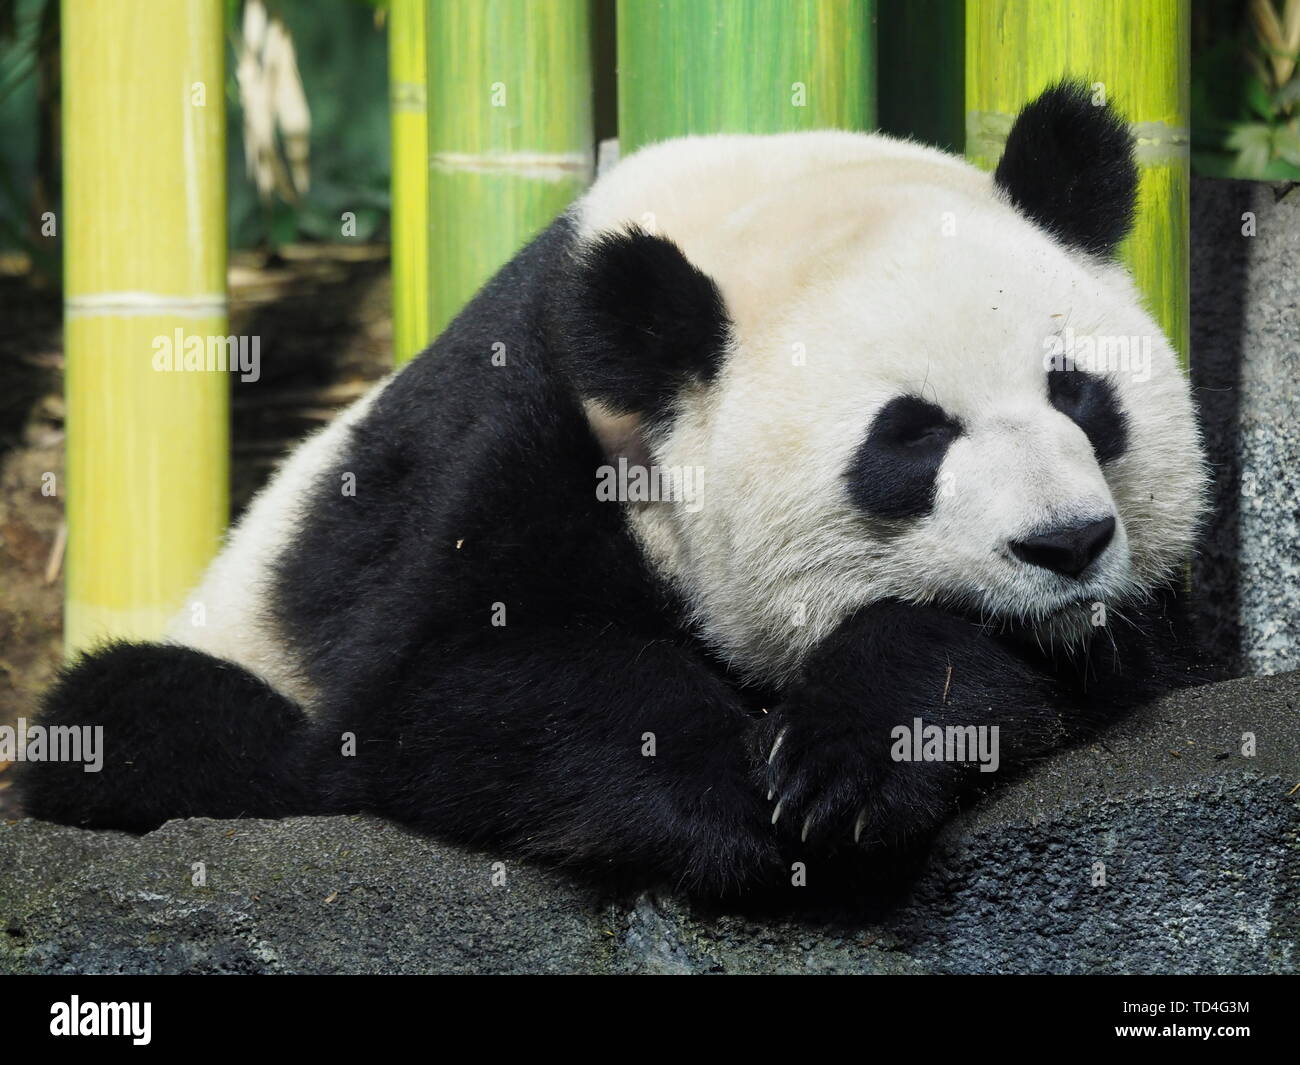 CALGARY, Alberta, Canada - 29 dicembre 2018: un gigantesco orso panda (Ailuropoda melanoleuca) napping in lo Zoo di Calgary, Canada Foto Stock